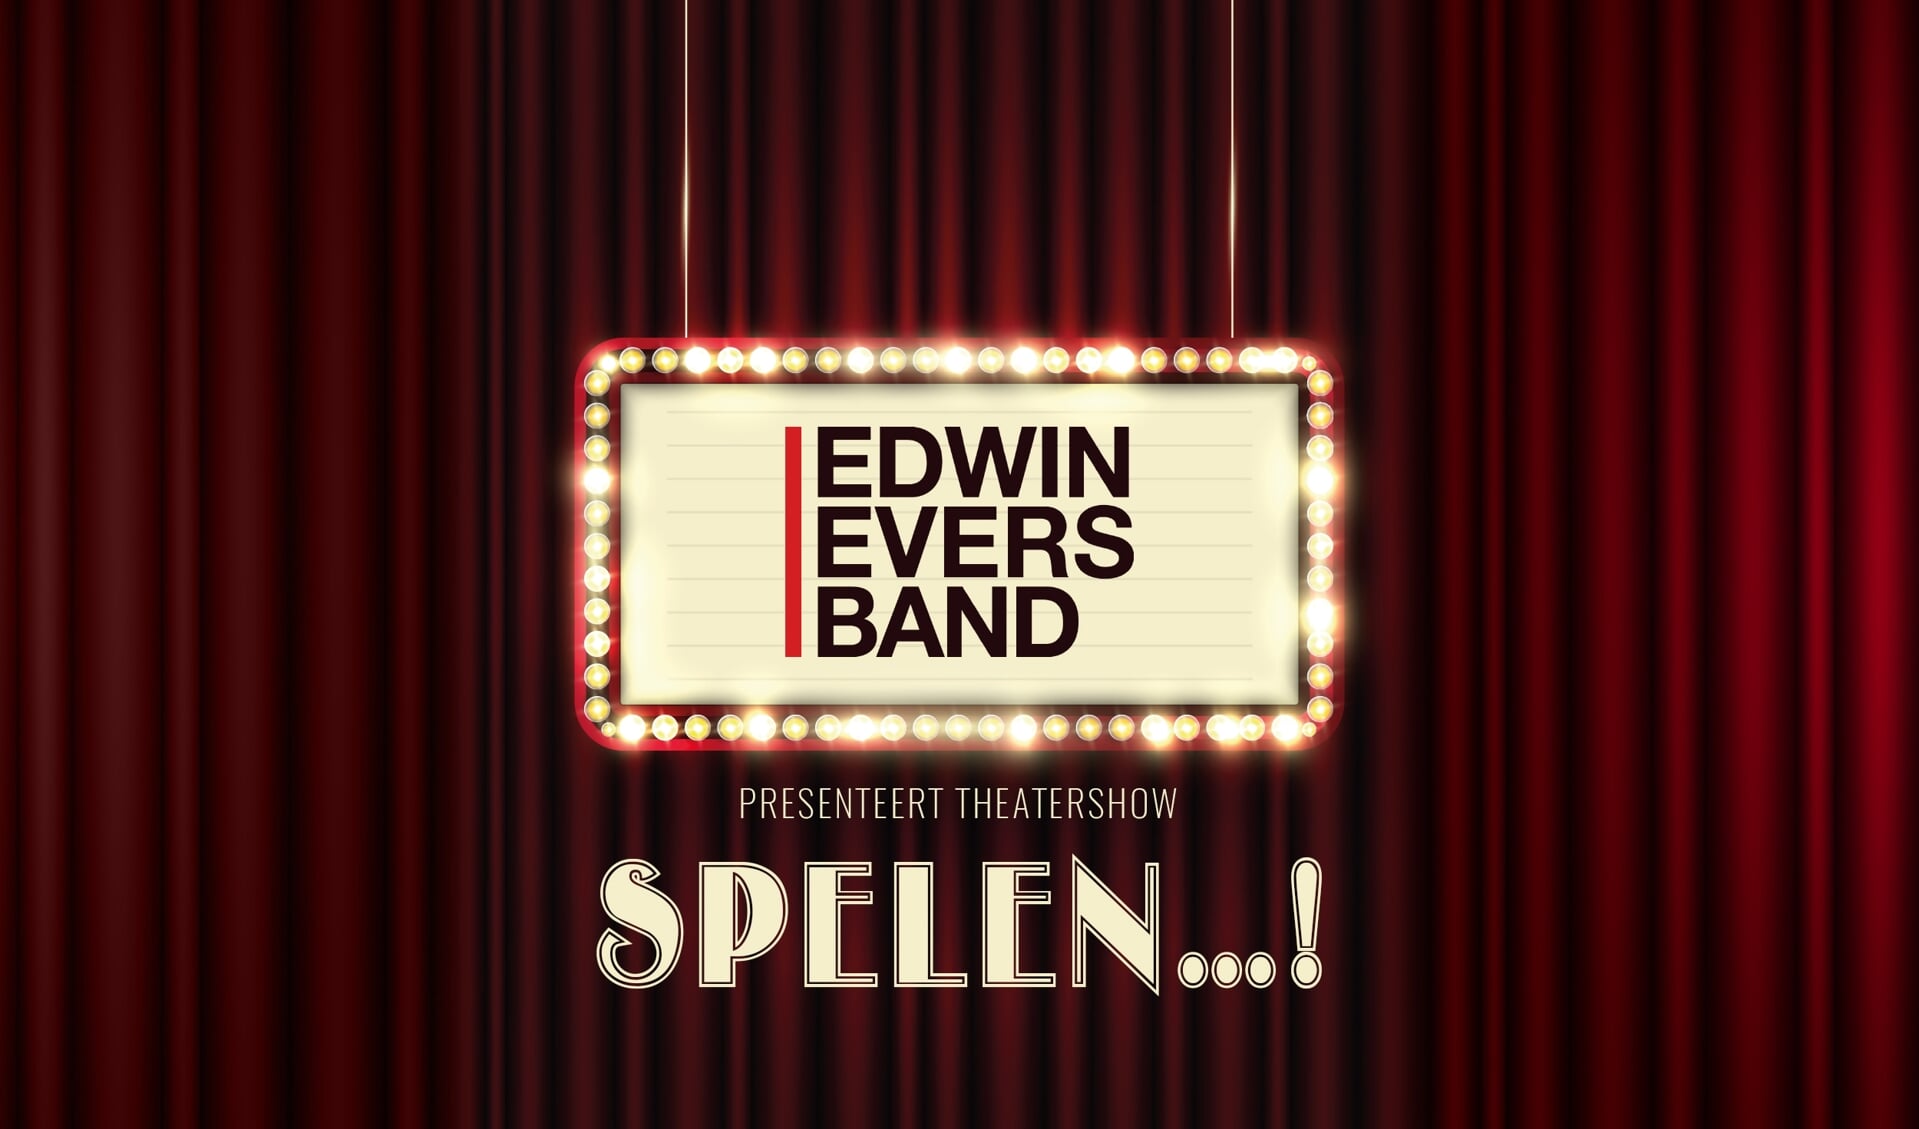 Edwin Evers Band terug naar De Lievekamp